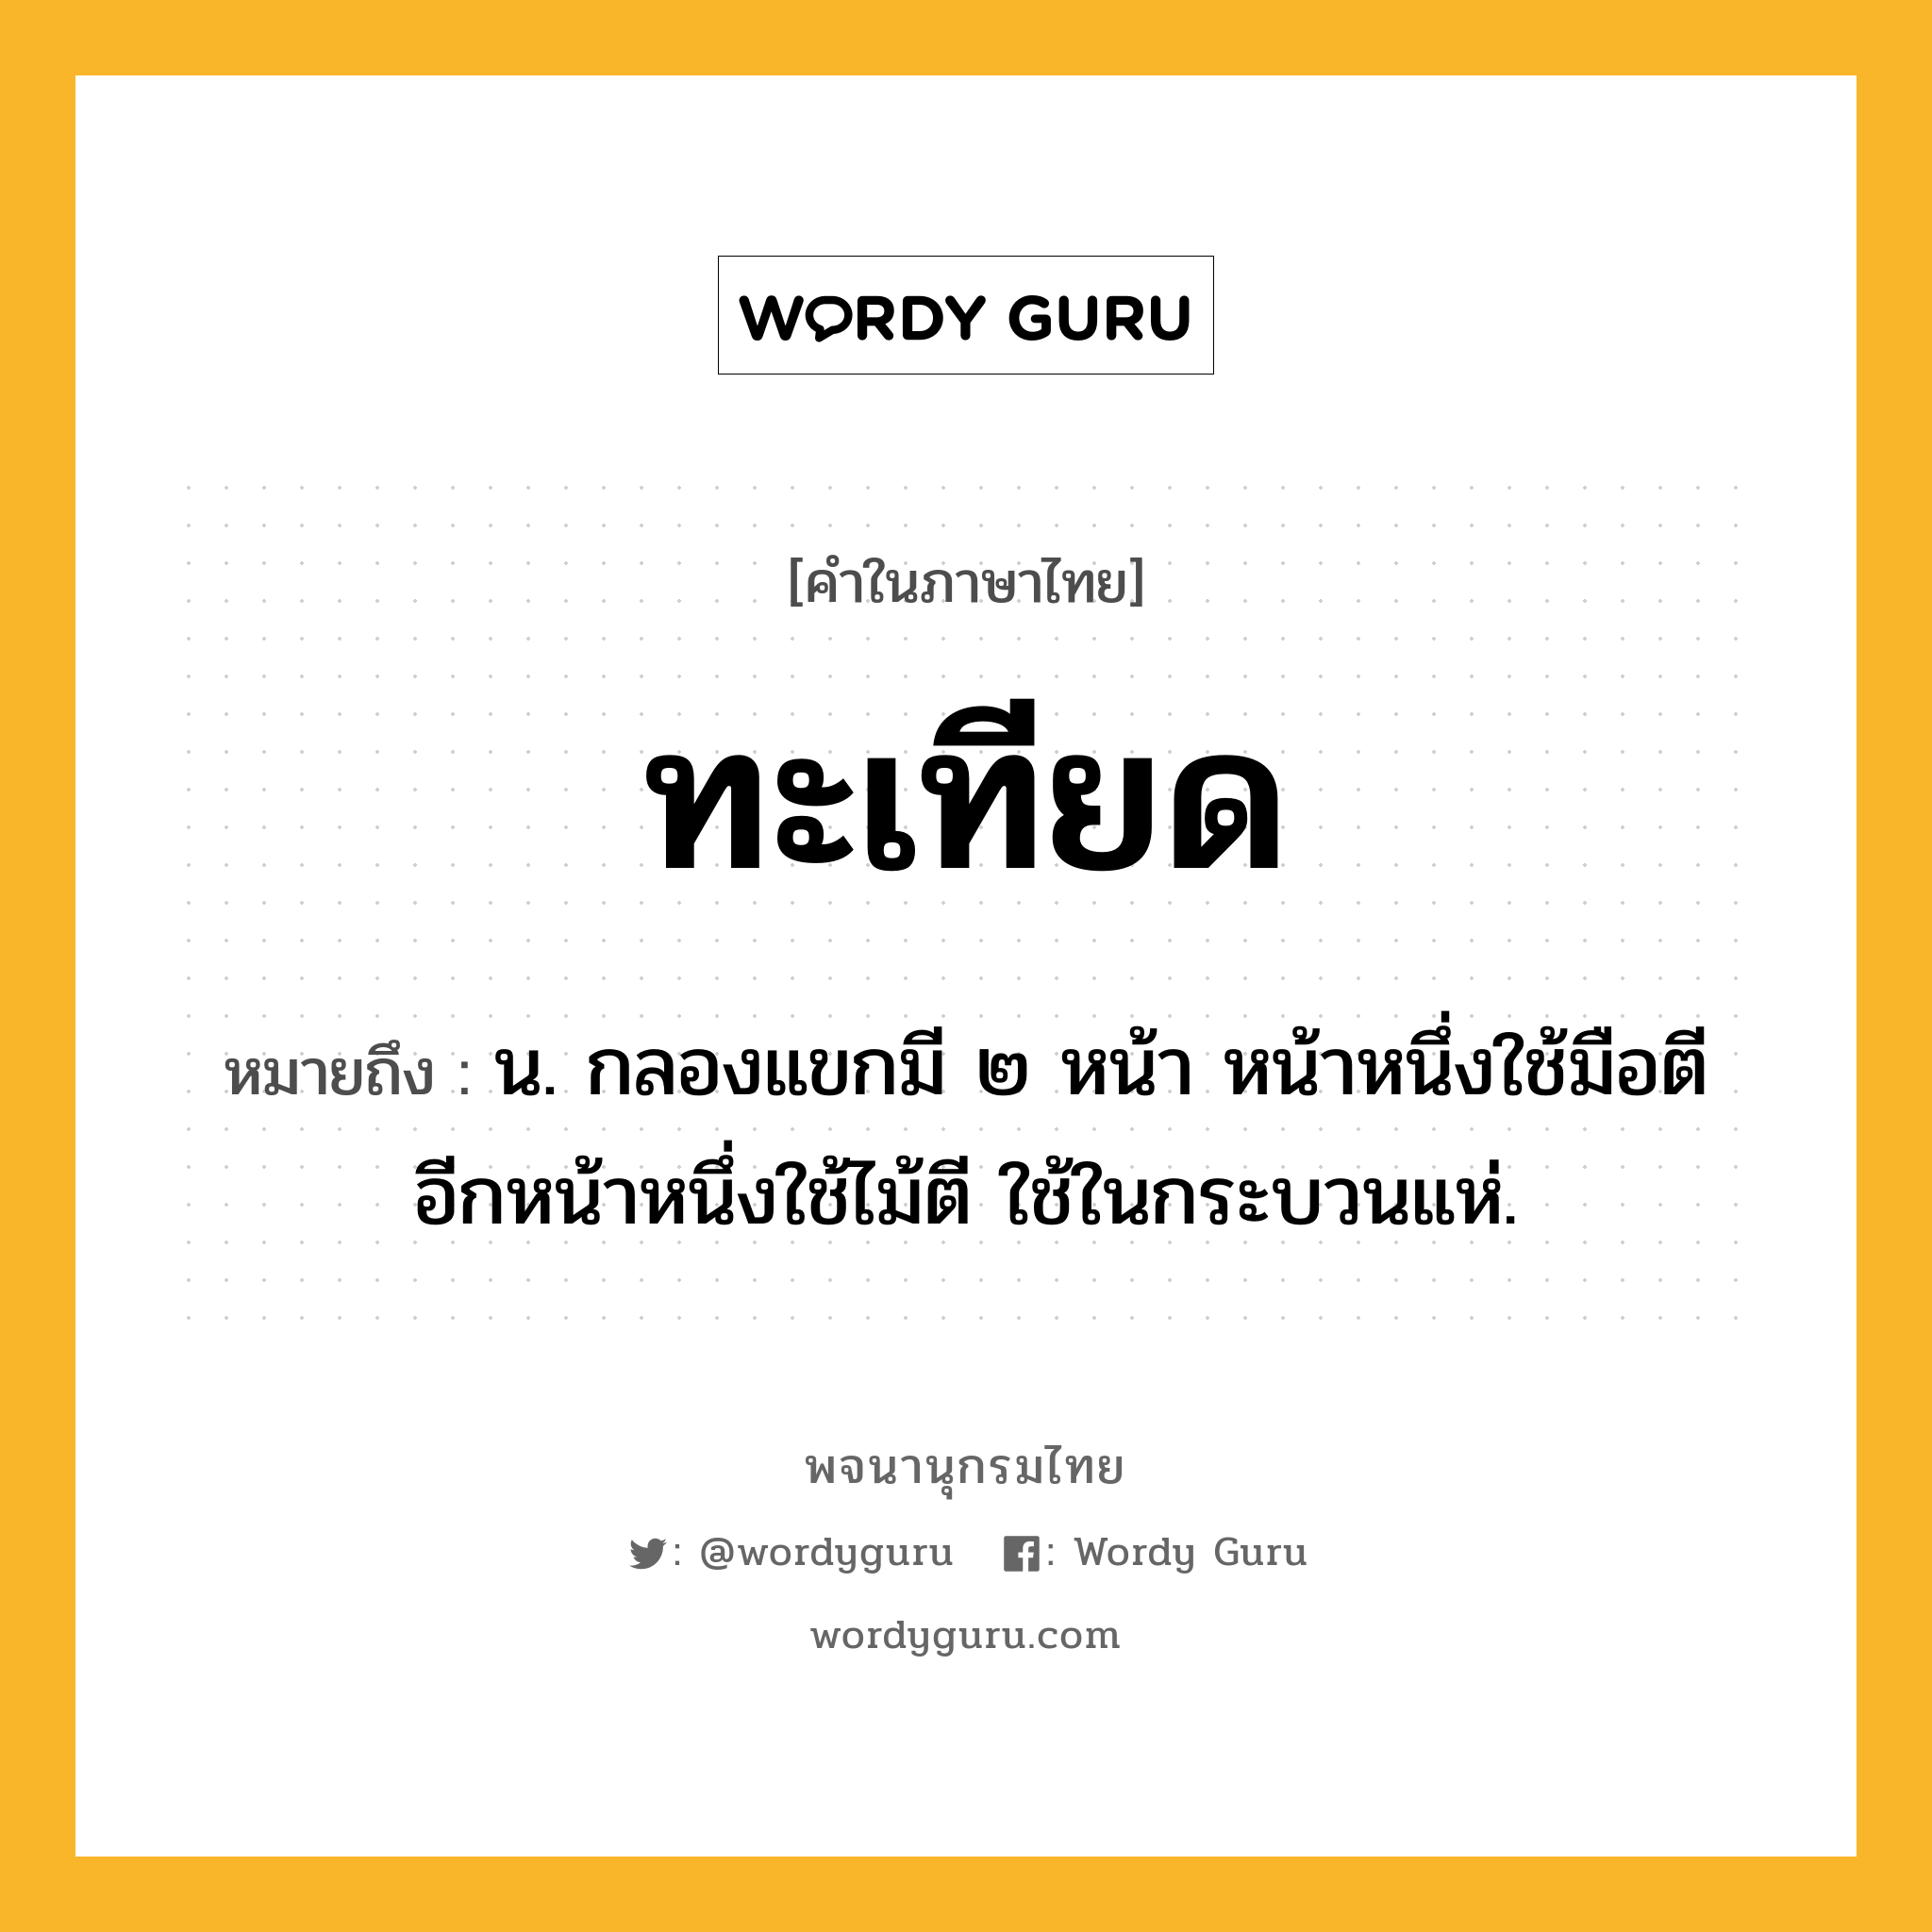 ทะเทียด ความหมาย หมายถึงอะไร?, คำในภาษาไทย ทะเทียด หมายถึง น. กลองแขกมี ๒ หน้า หน้าหนึ่งใช้มือตี อีกหน้าหนึ่งใช้ไม้ตี ใช้ในกระบวนแห่.